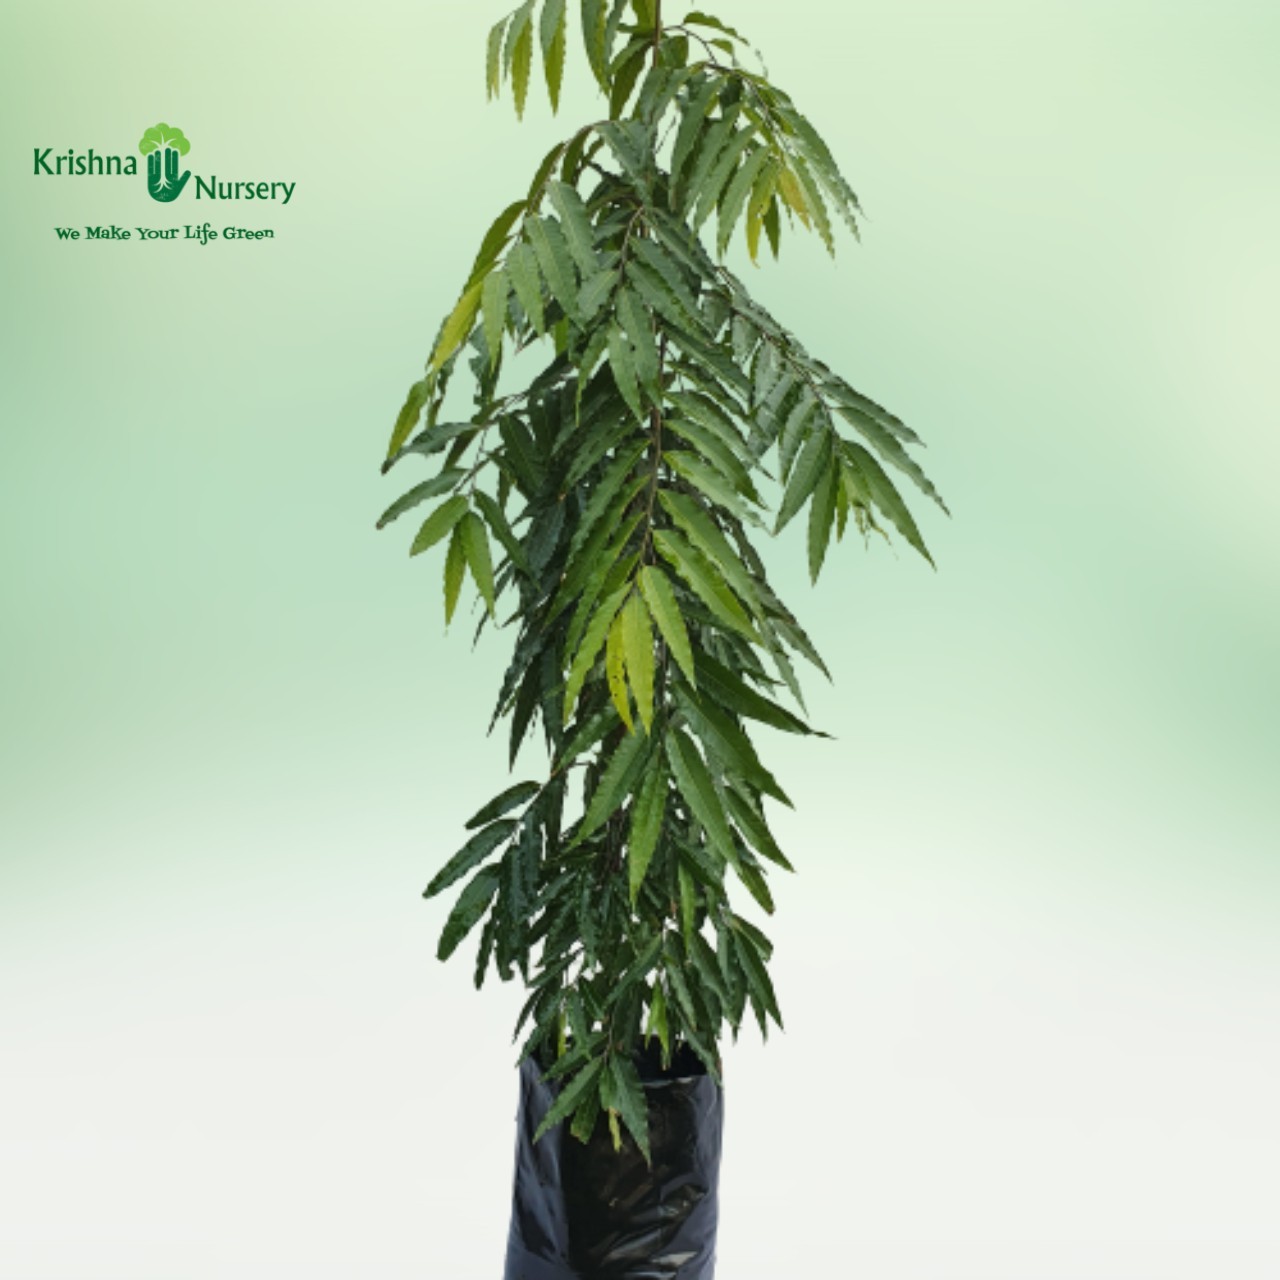 ashoka tree (saraca asoca) - timber plants